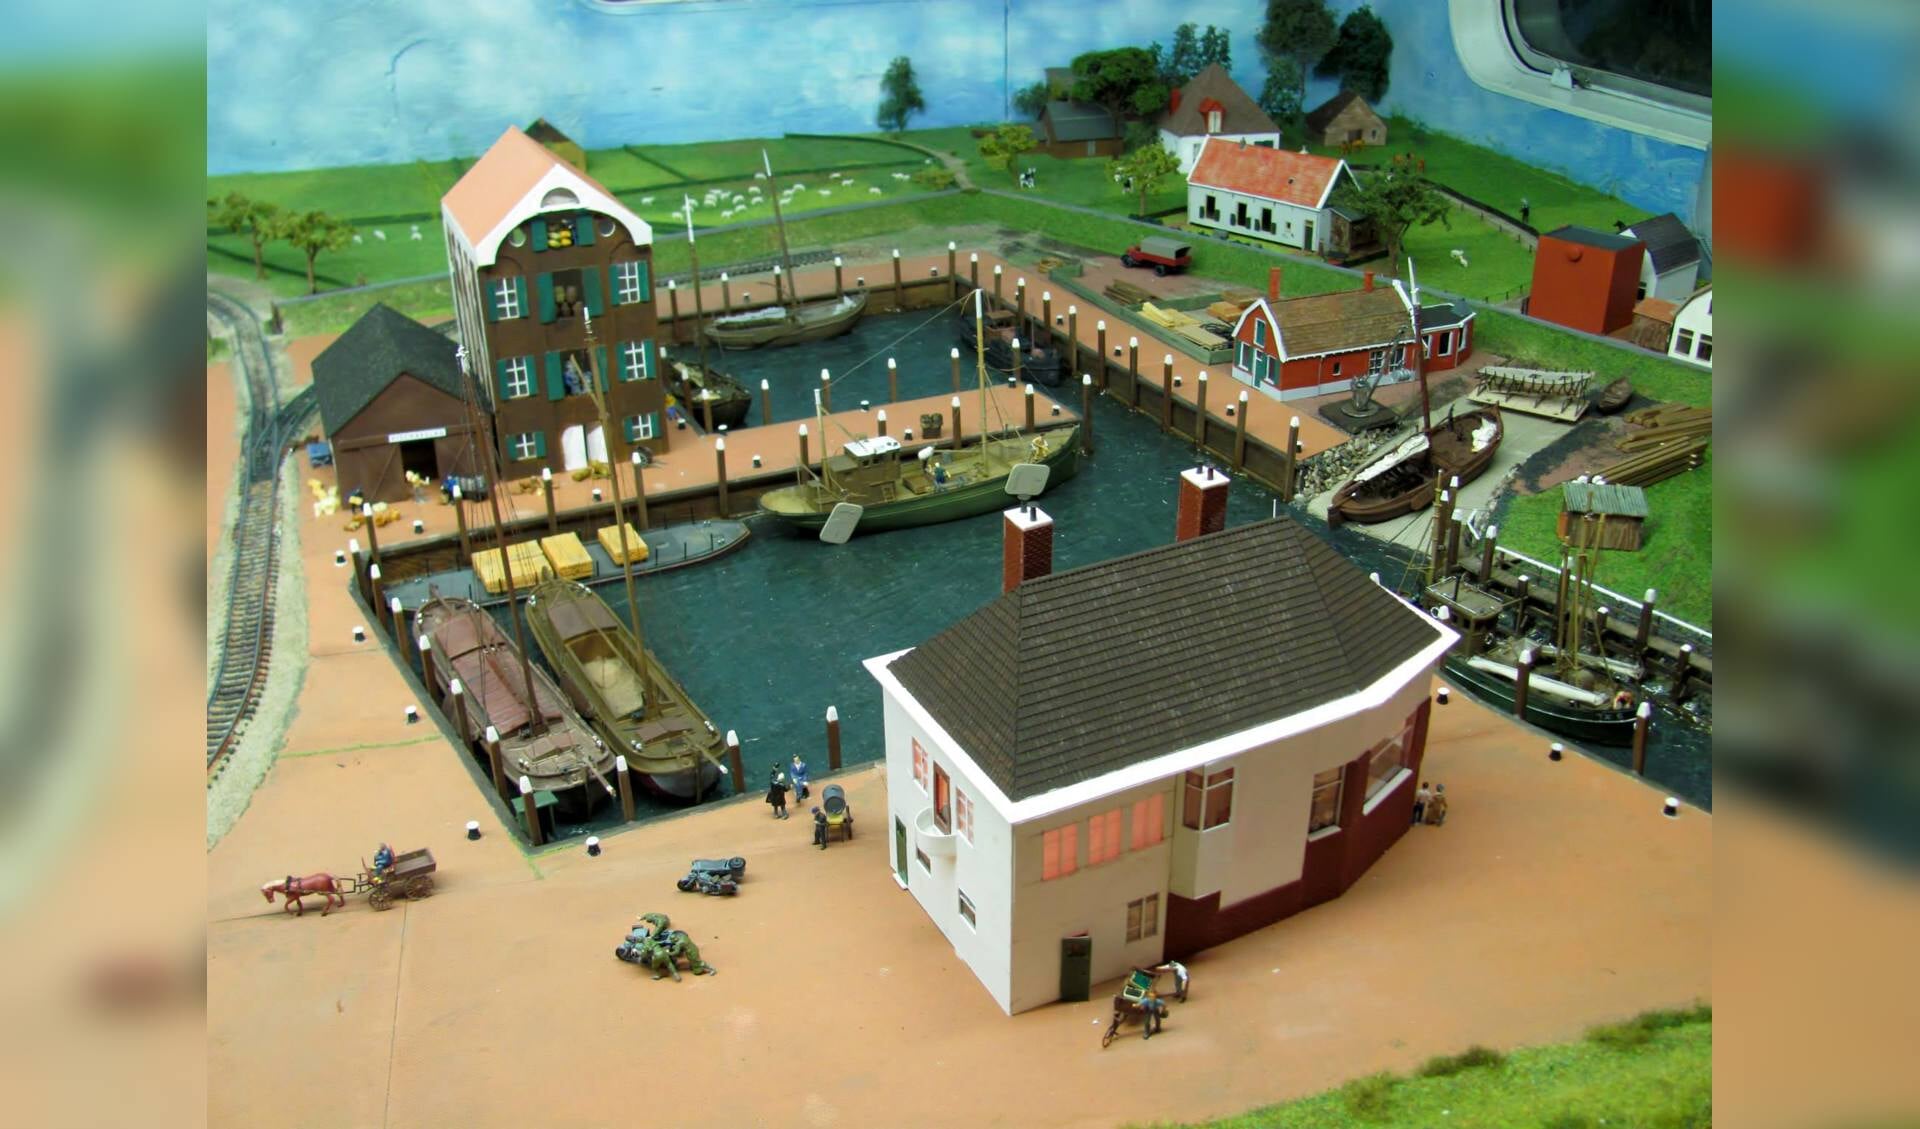 Maquette van de haven tijdens de oorlog, te zien in de caravan van de Texelse Modelspoorclub.